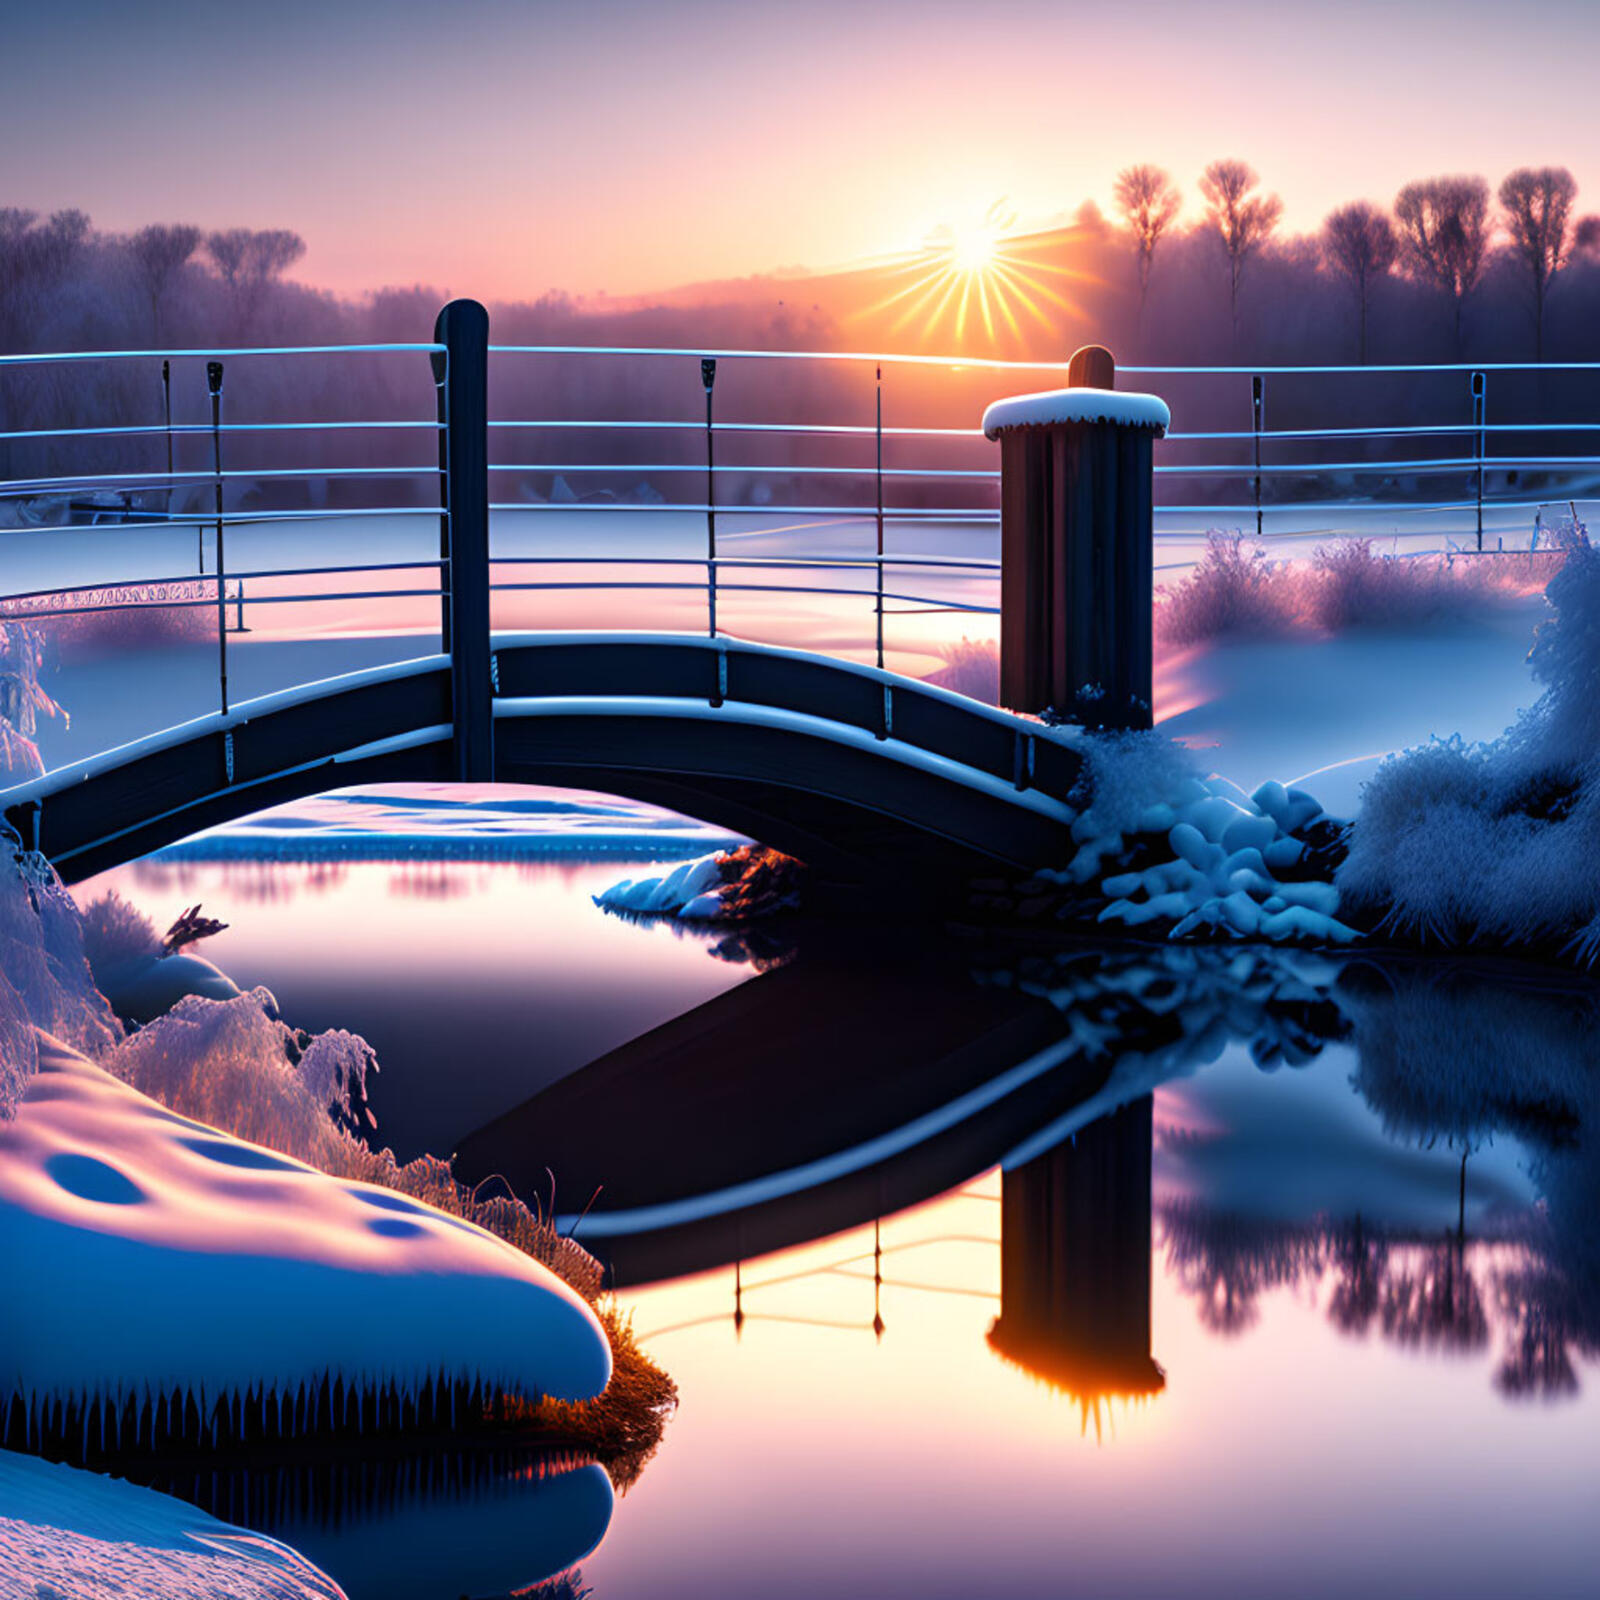 免费照片在一个霜冻的冬雪之晨，河上的日出与桥面交相辉映，美不胜收